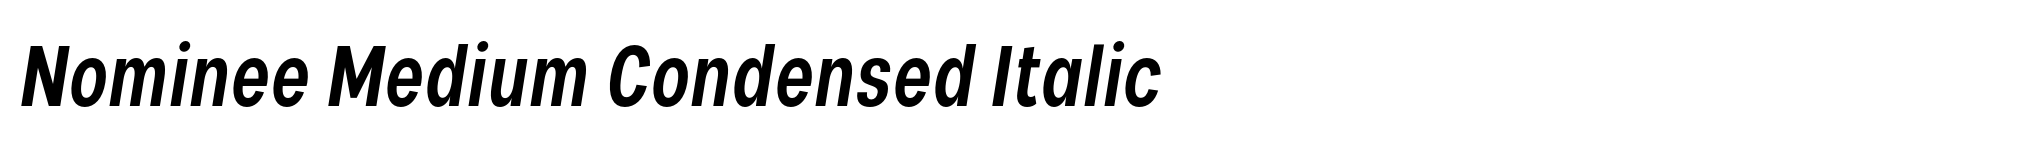 Nominee Medium Condensed Italic image